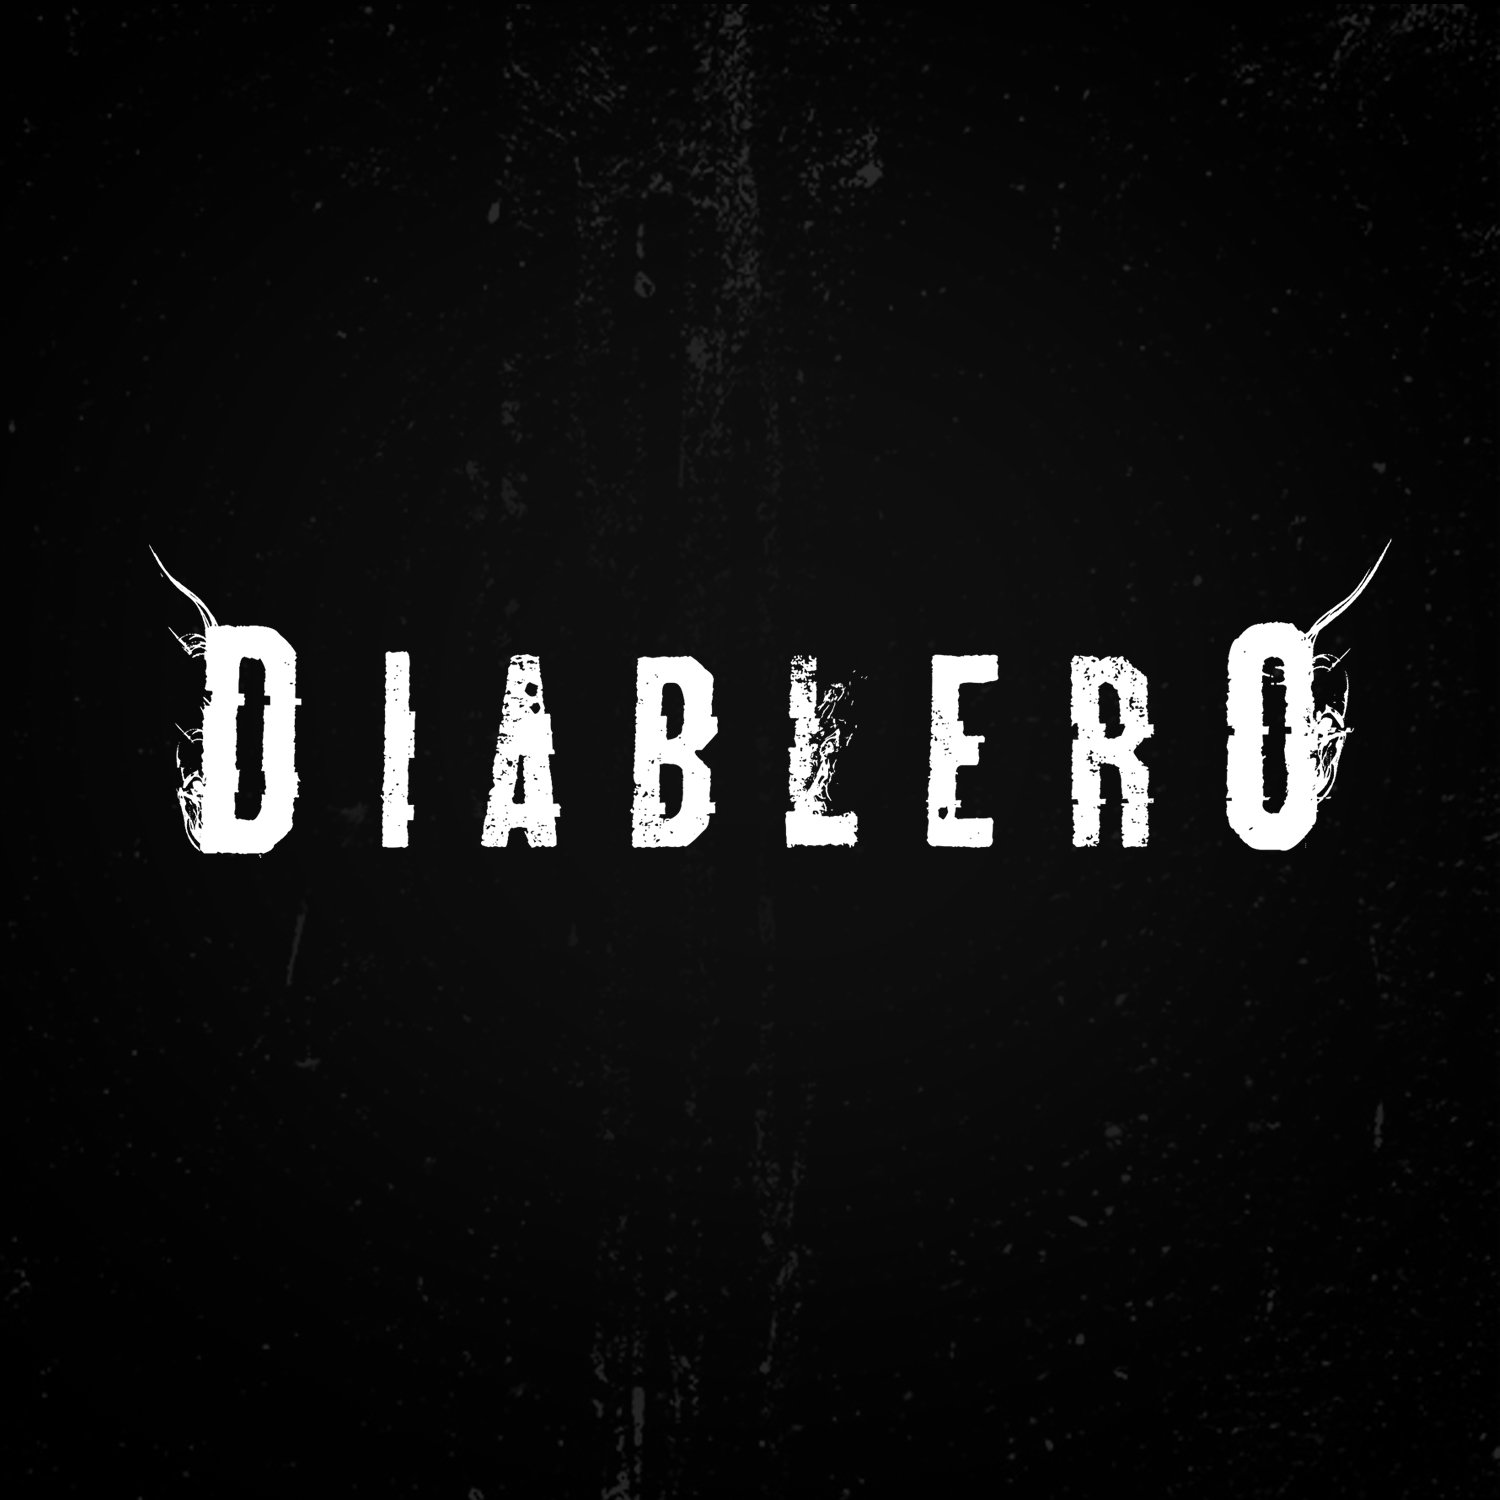 Aquí hay puro diablo suelto. #Diablero, ya disponible solo en Netflix.